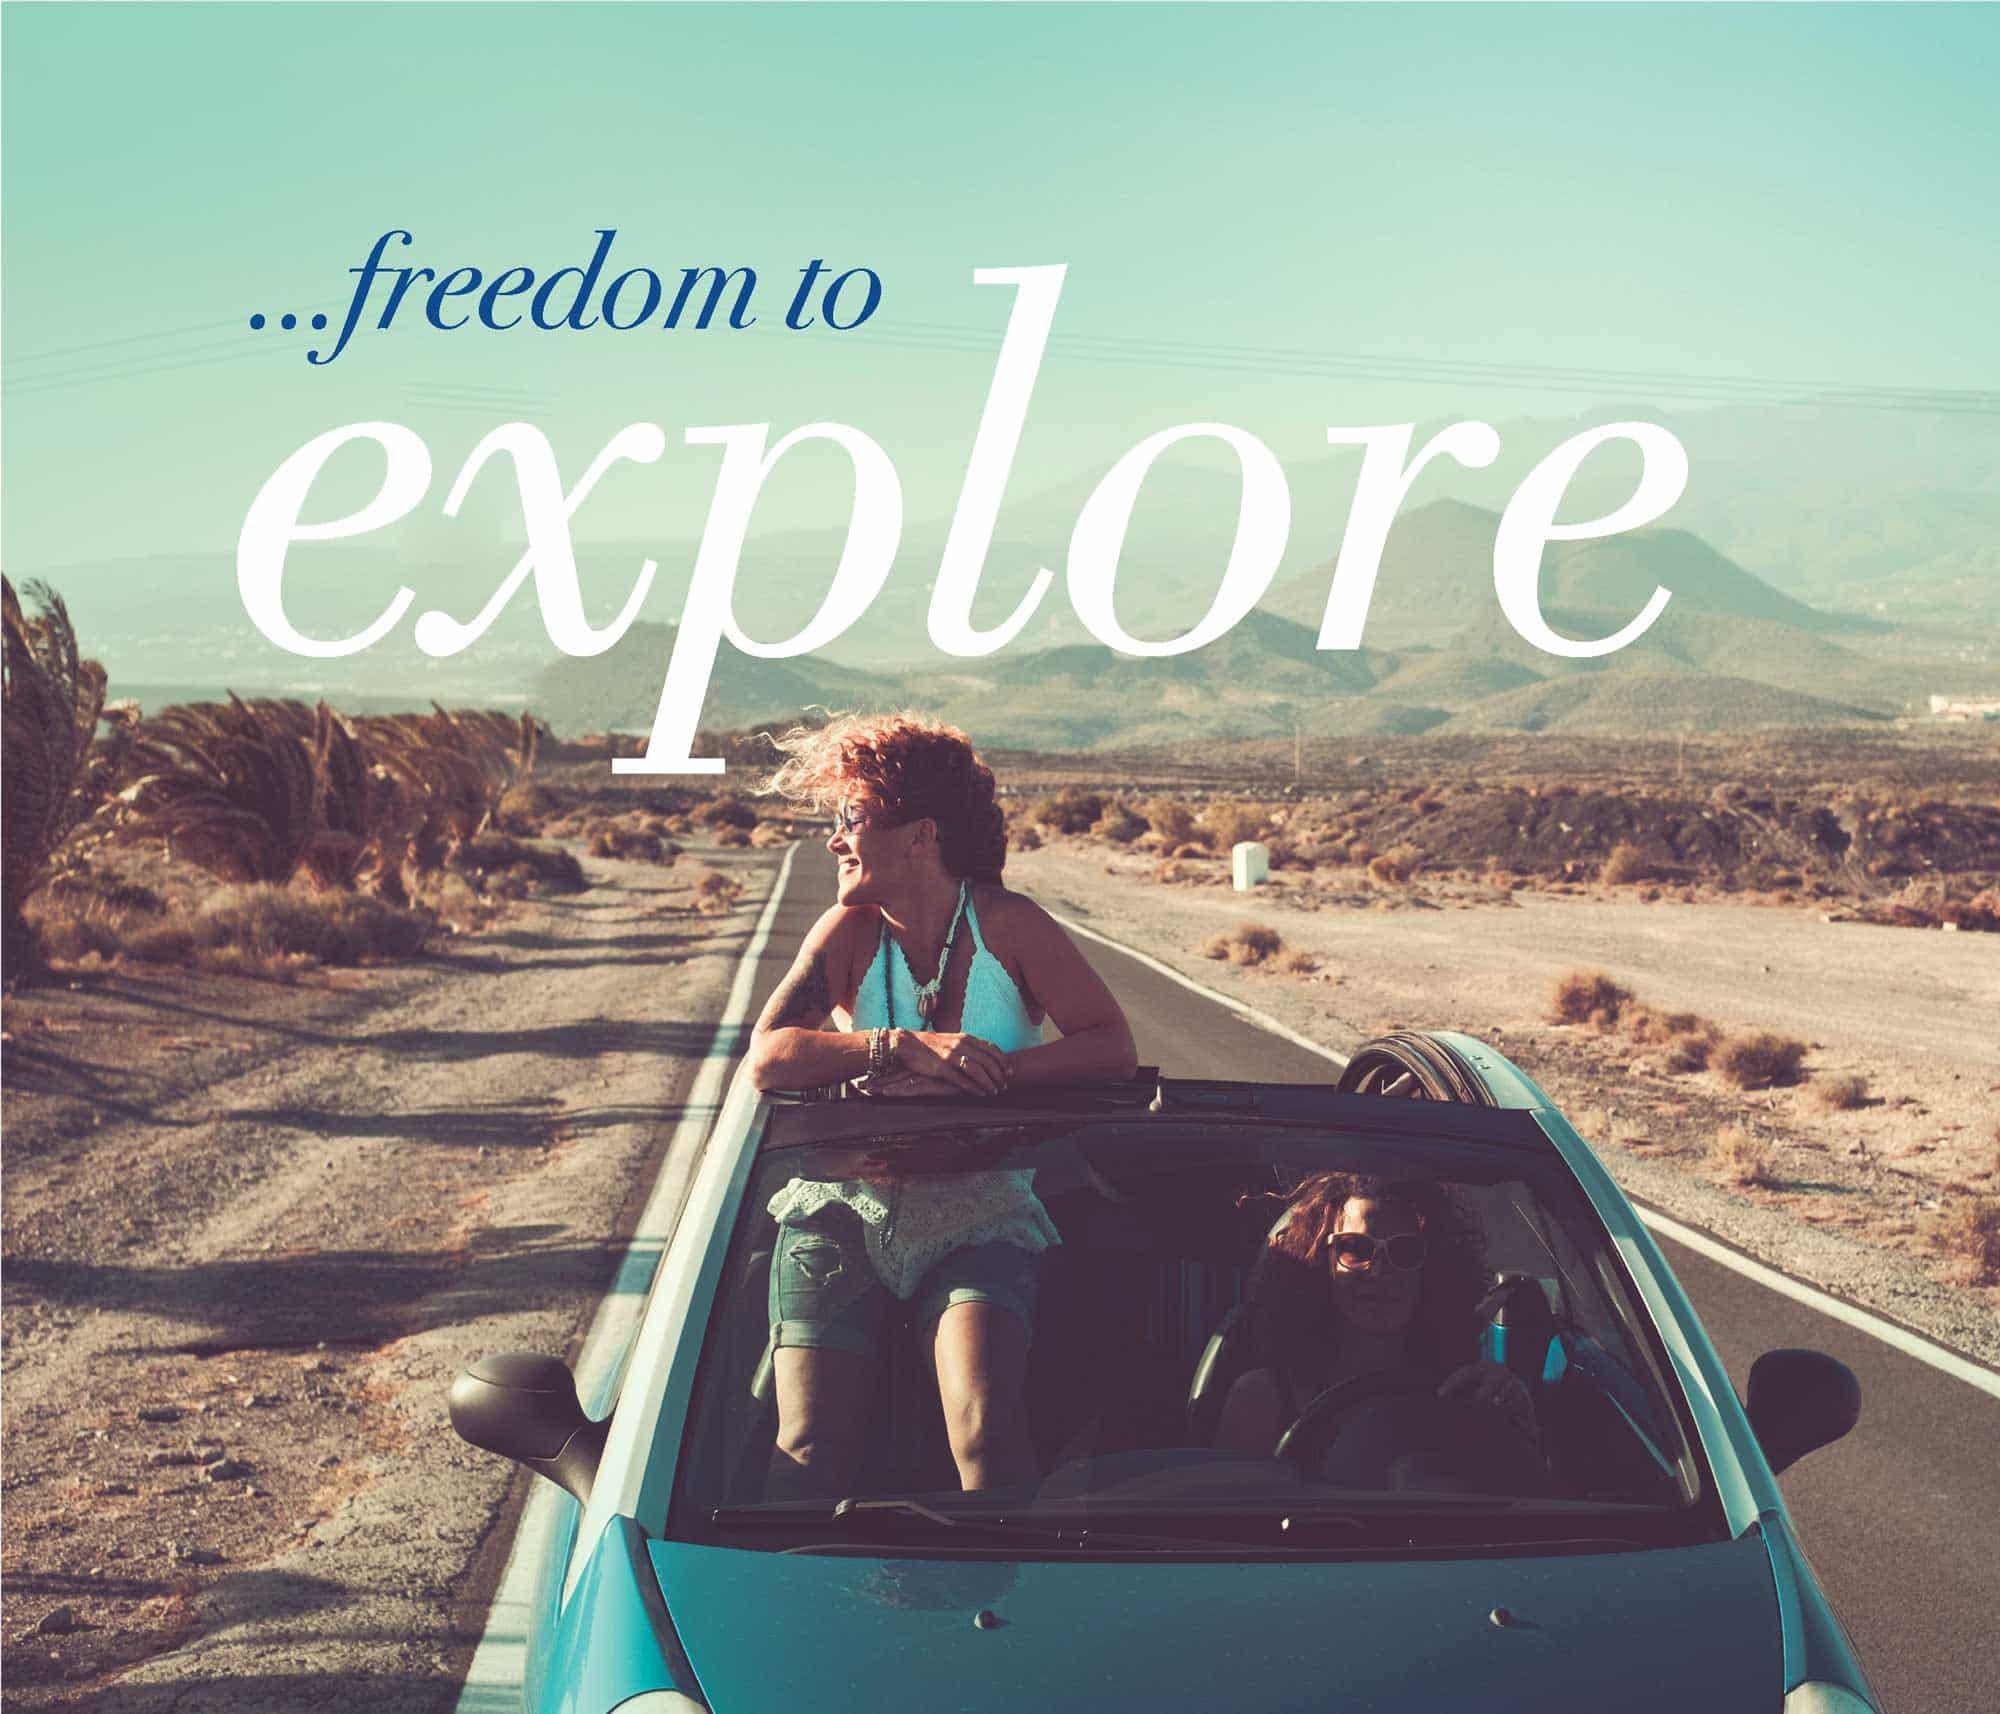 Freedom to explore